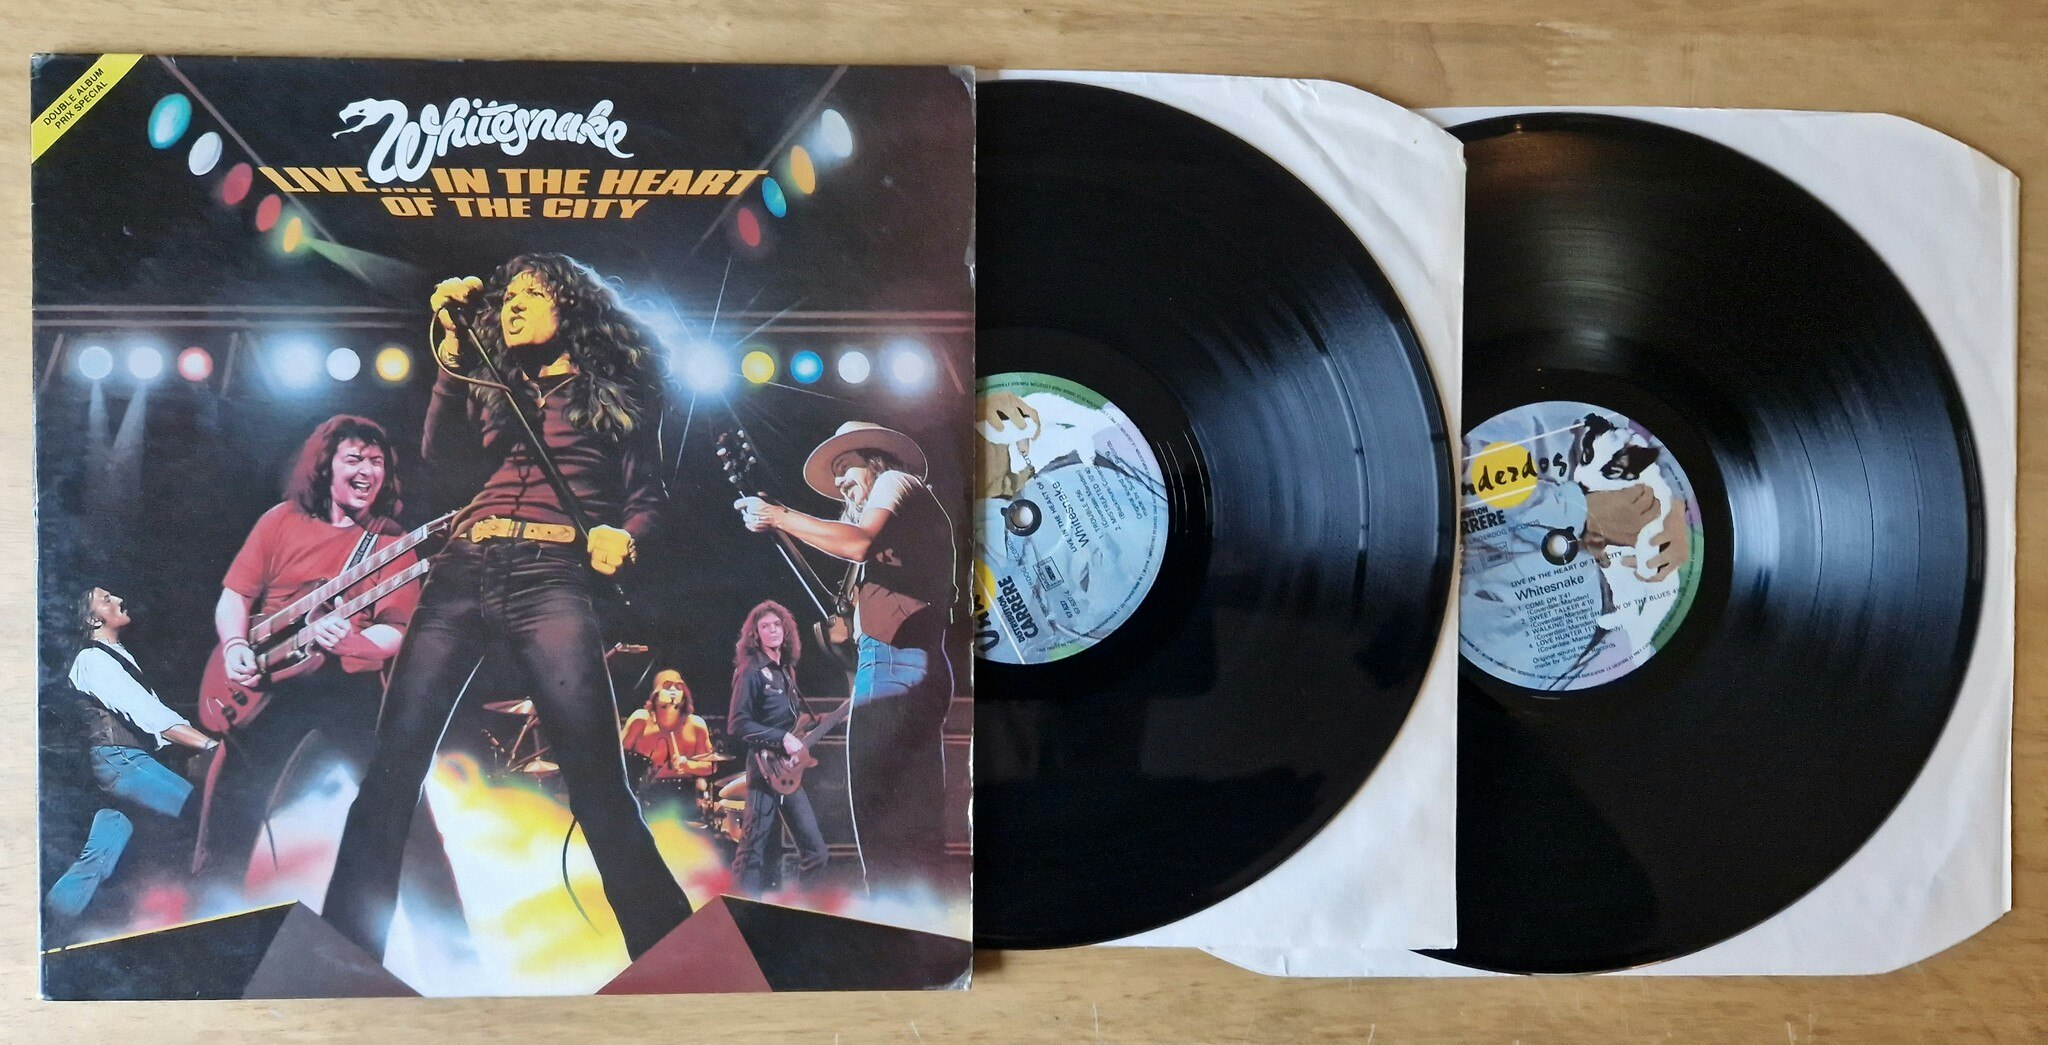 Whitesnake, Live.. in the heart of the city. Vinyl 2LP